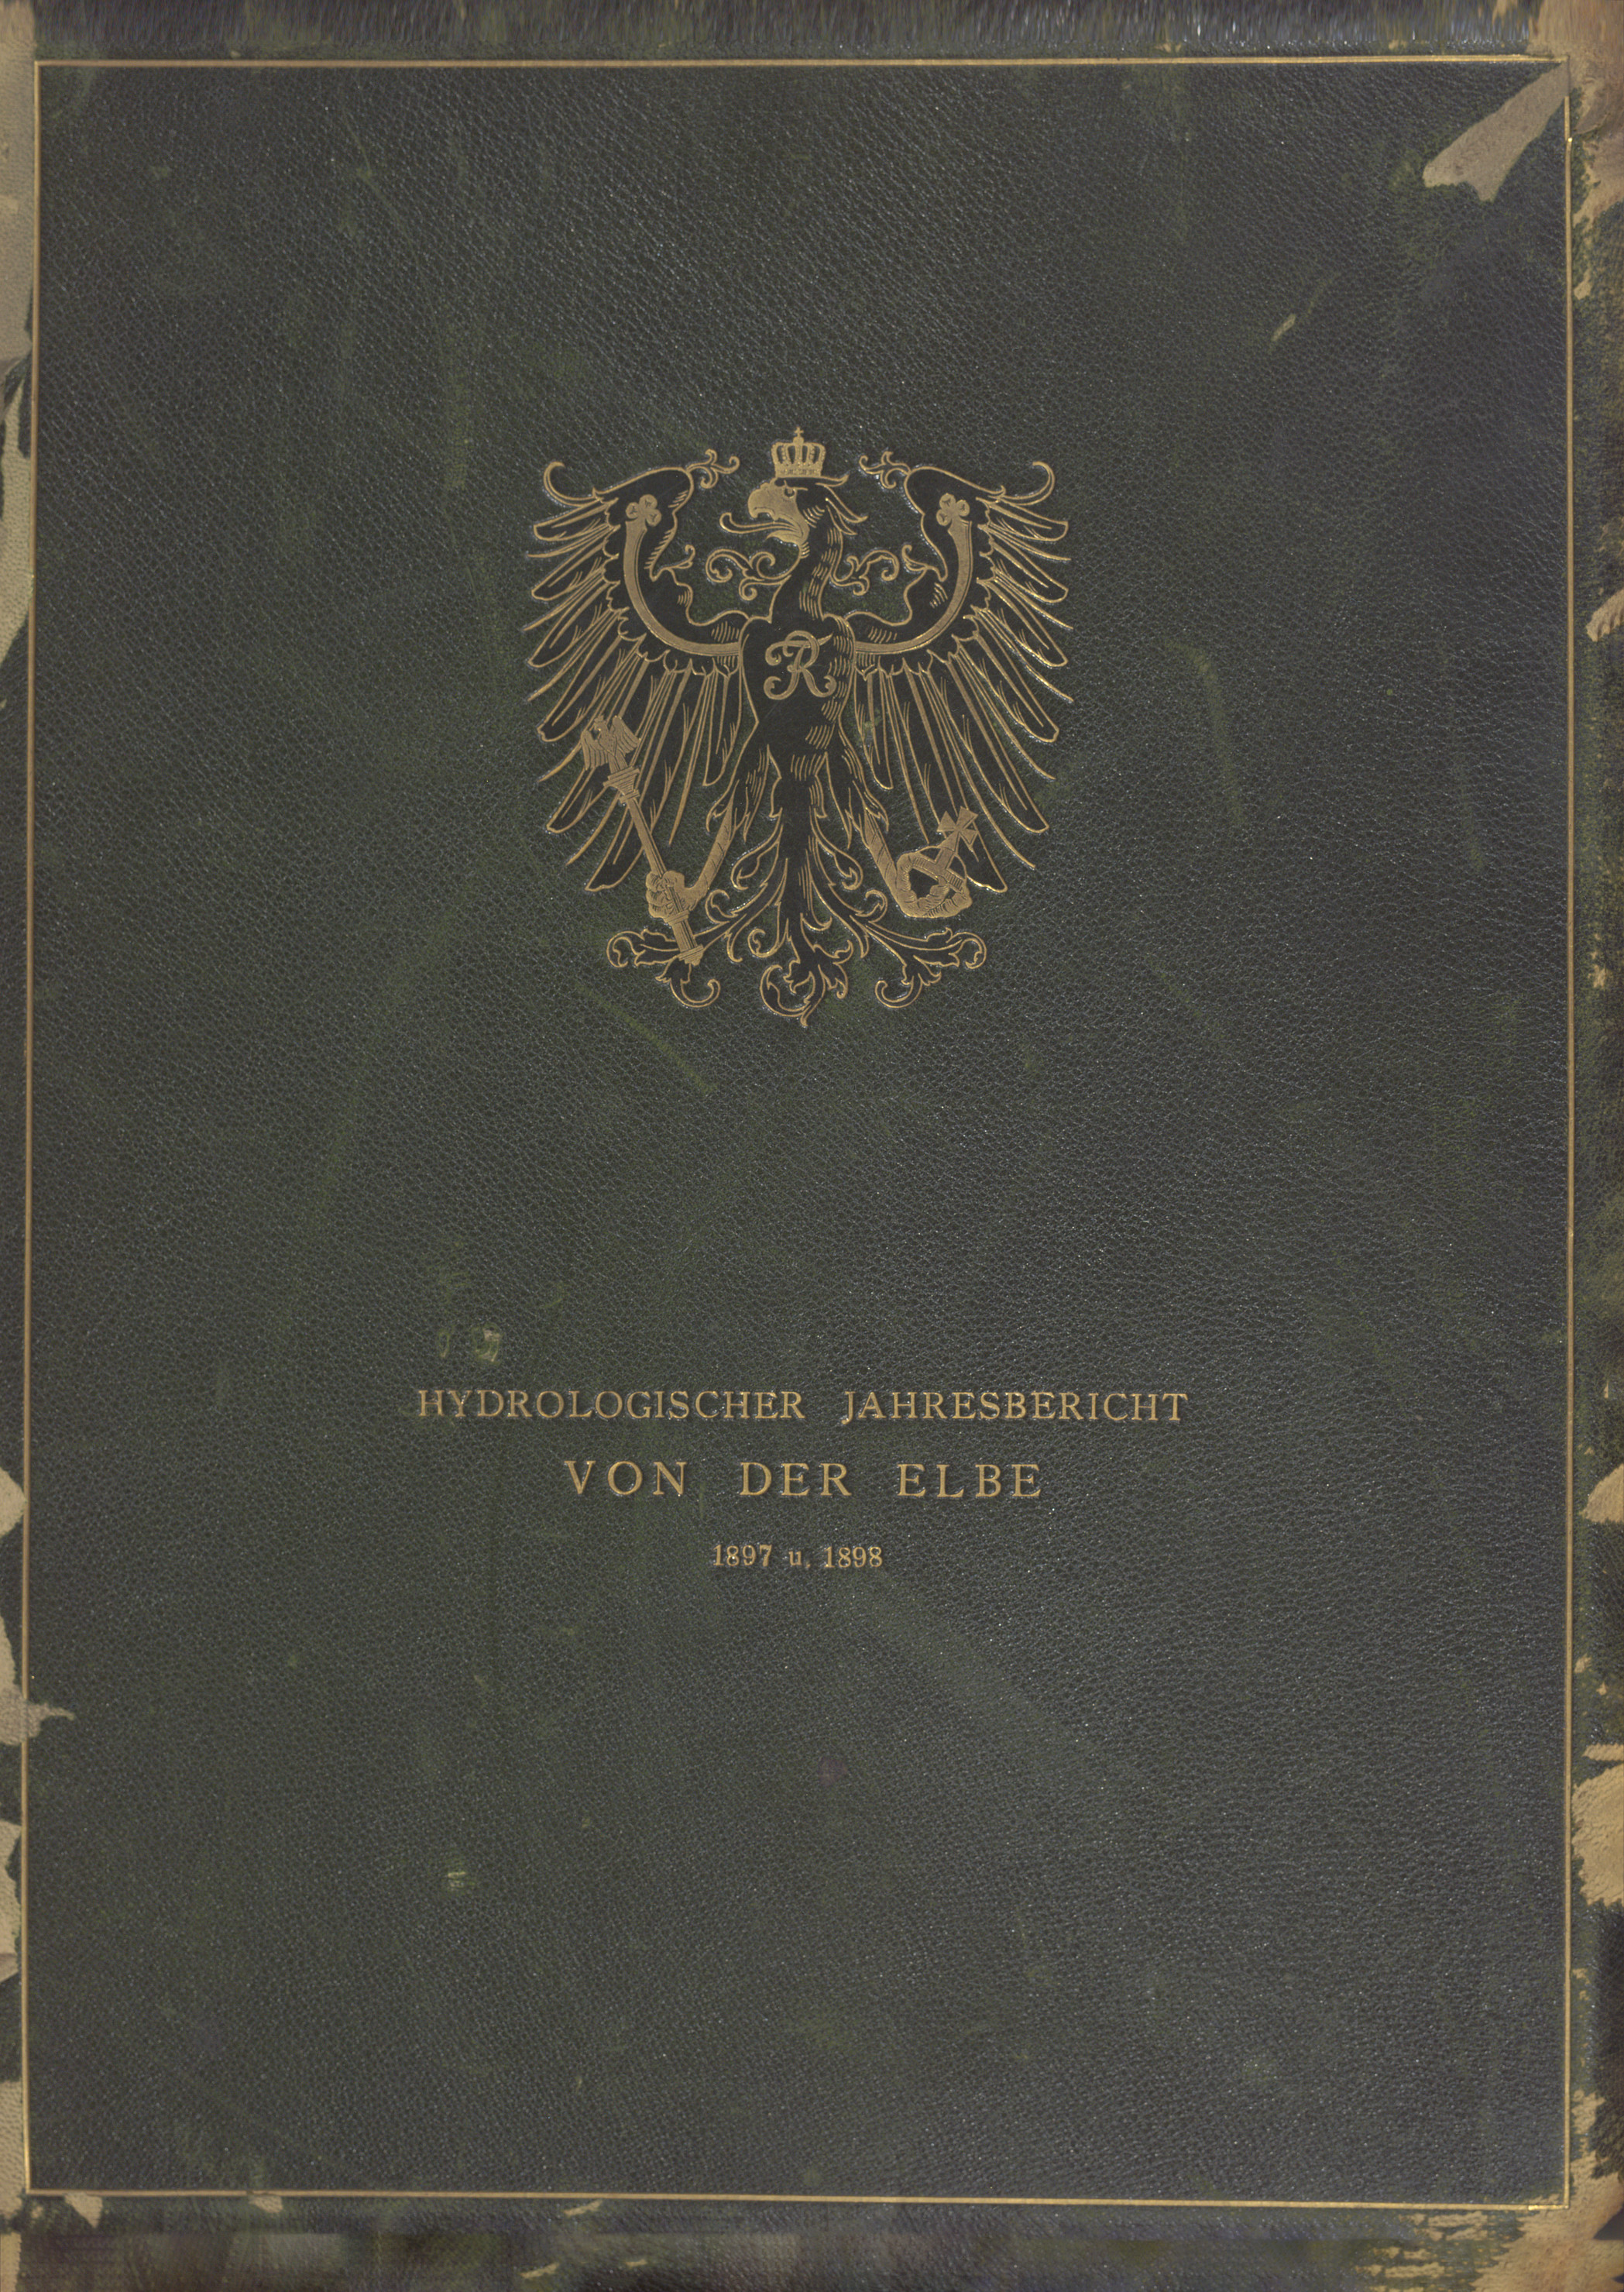 Hydrologischer Jahresbericht von der Elbe für 1897